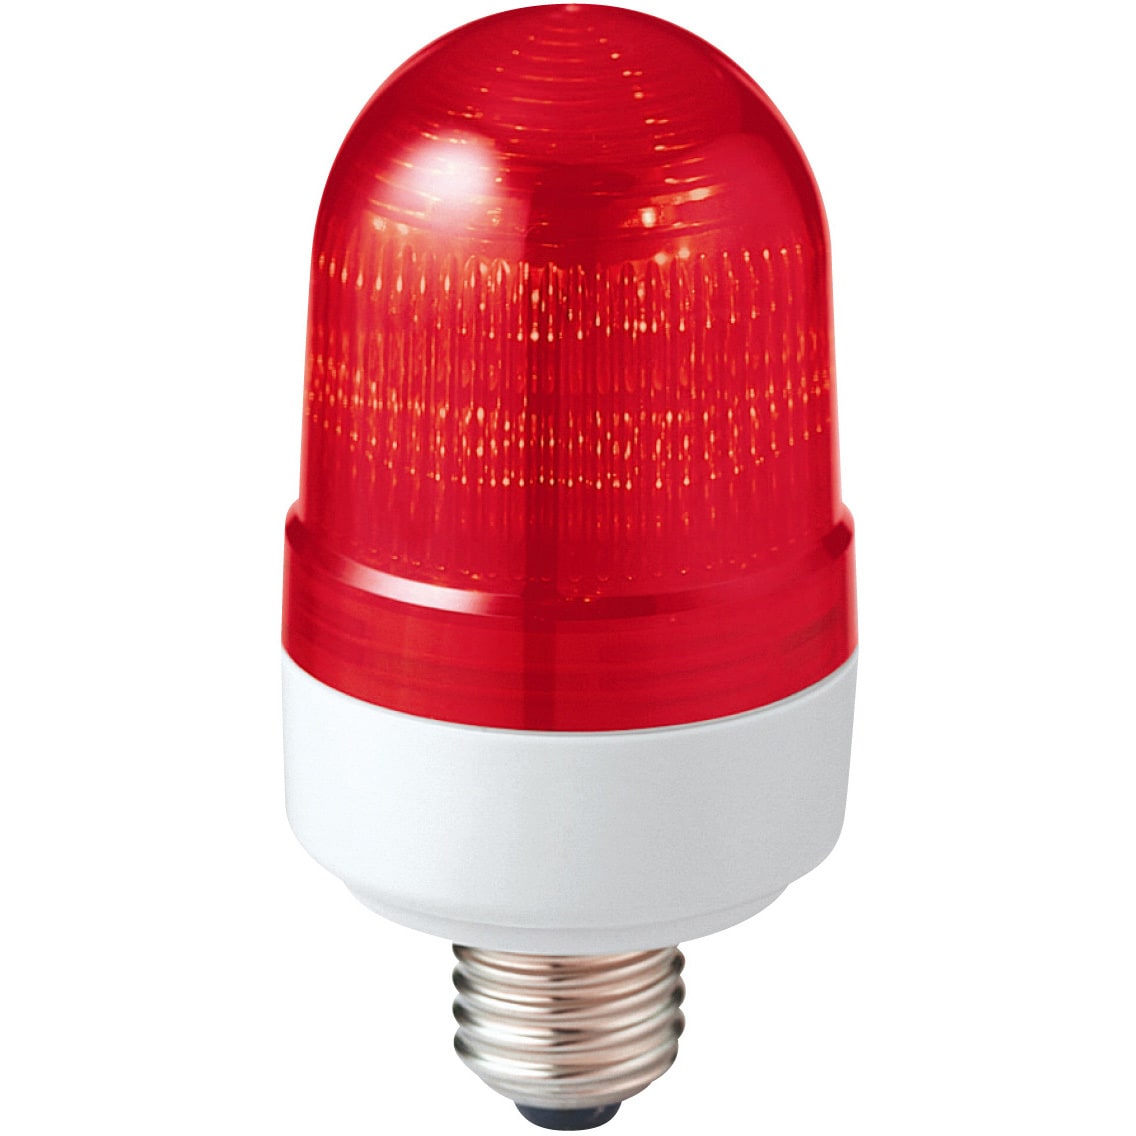 最大78%OFFクーポン シュナイダーエレクトリックホールディングス 超小型LED表示灯 LAXE-24R